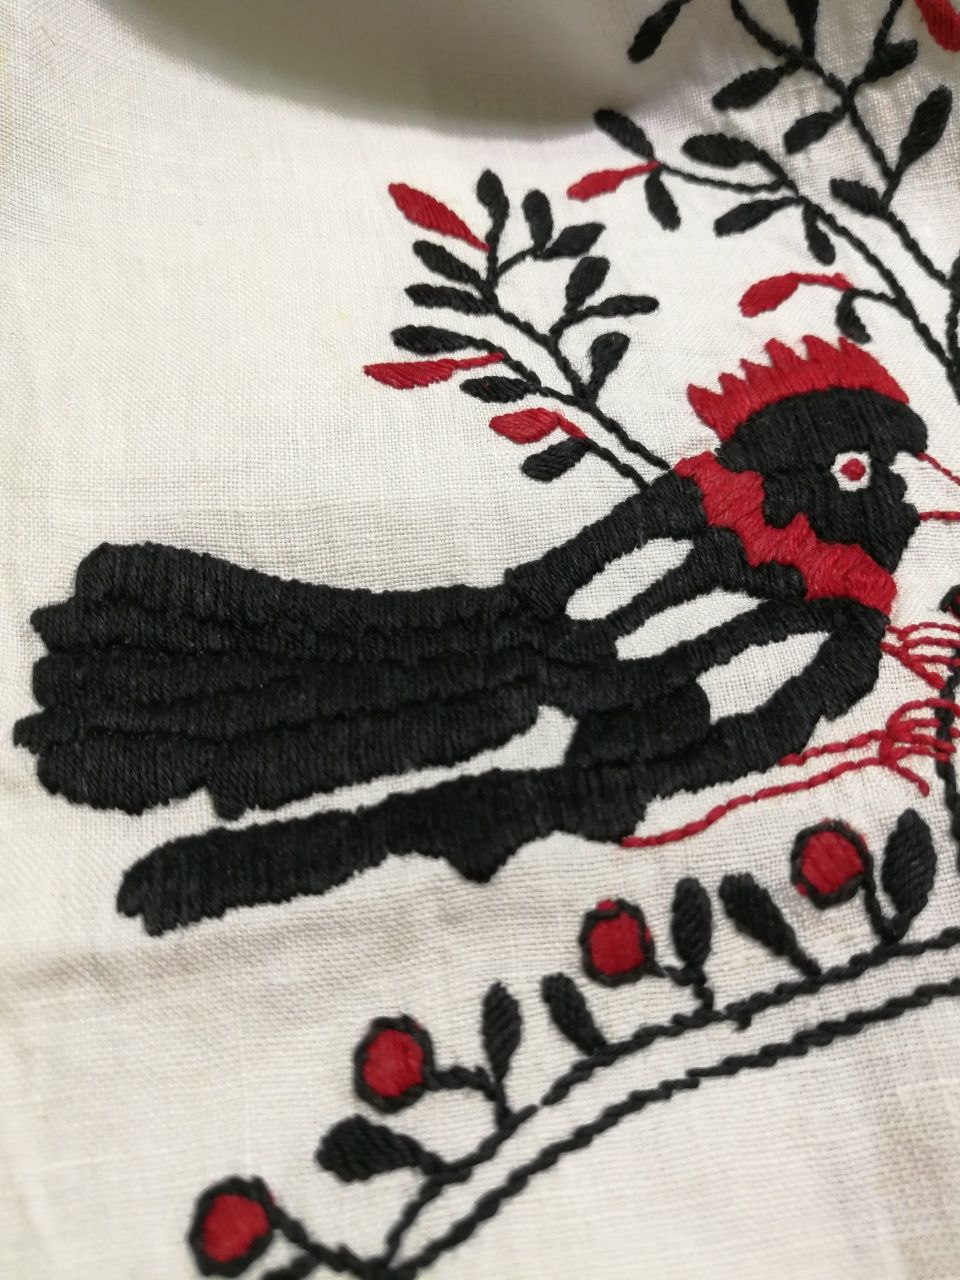 Домотканное полотно для етноодежды рушник вышивка гладью крестиком